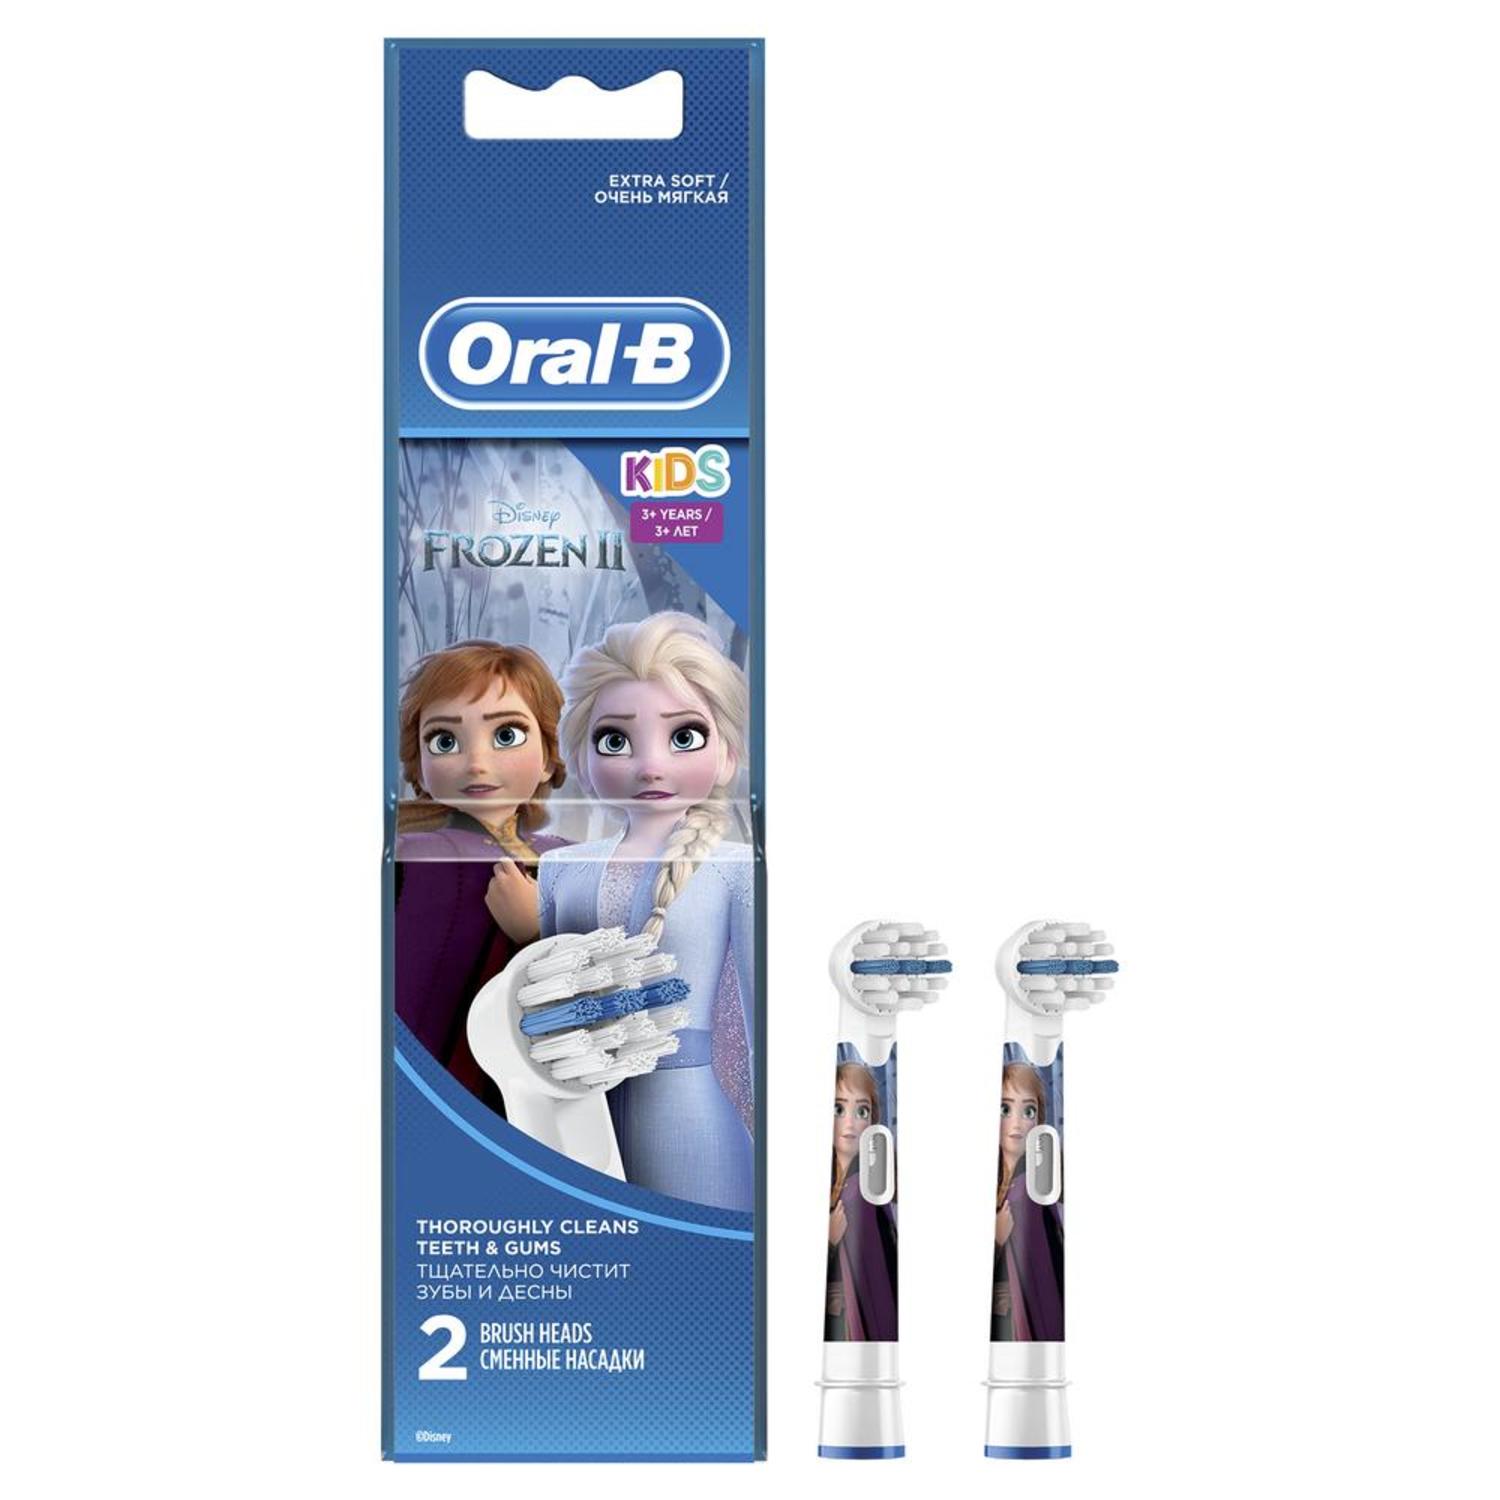 Орал-Б насадка Стайджес Пауэр для электрической зубной щетки №2 EB10K орал б насадка для эл зубной щетки сенсиультрасин eb60 2